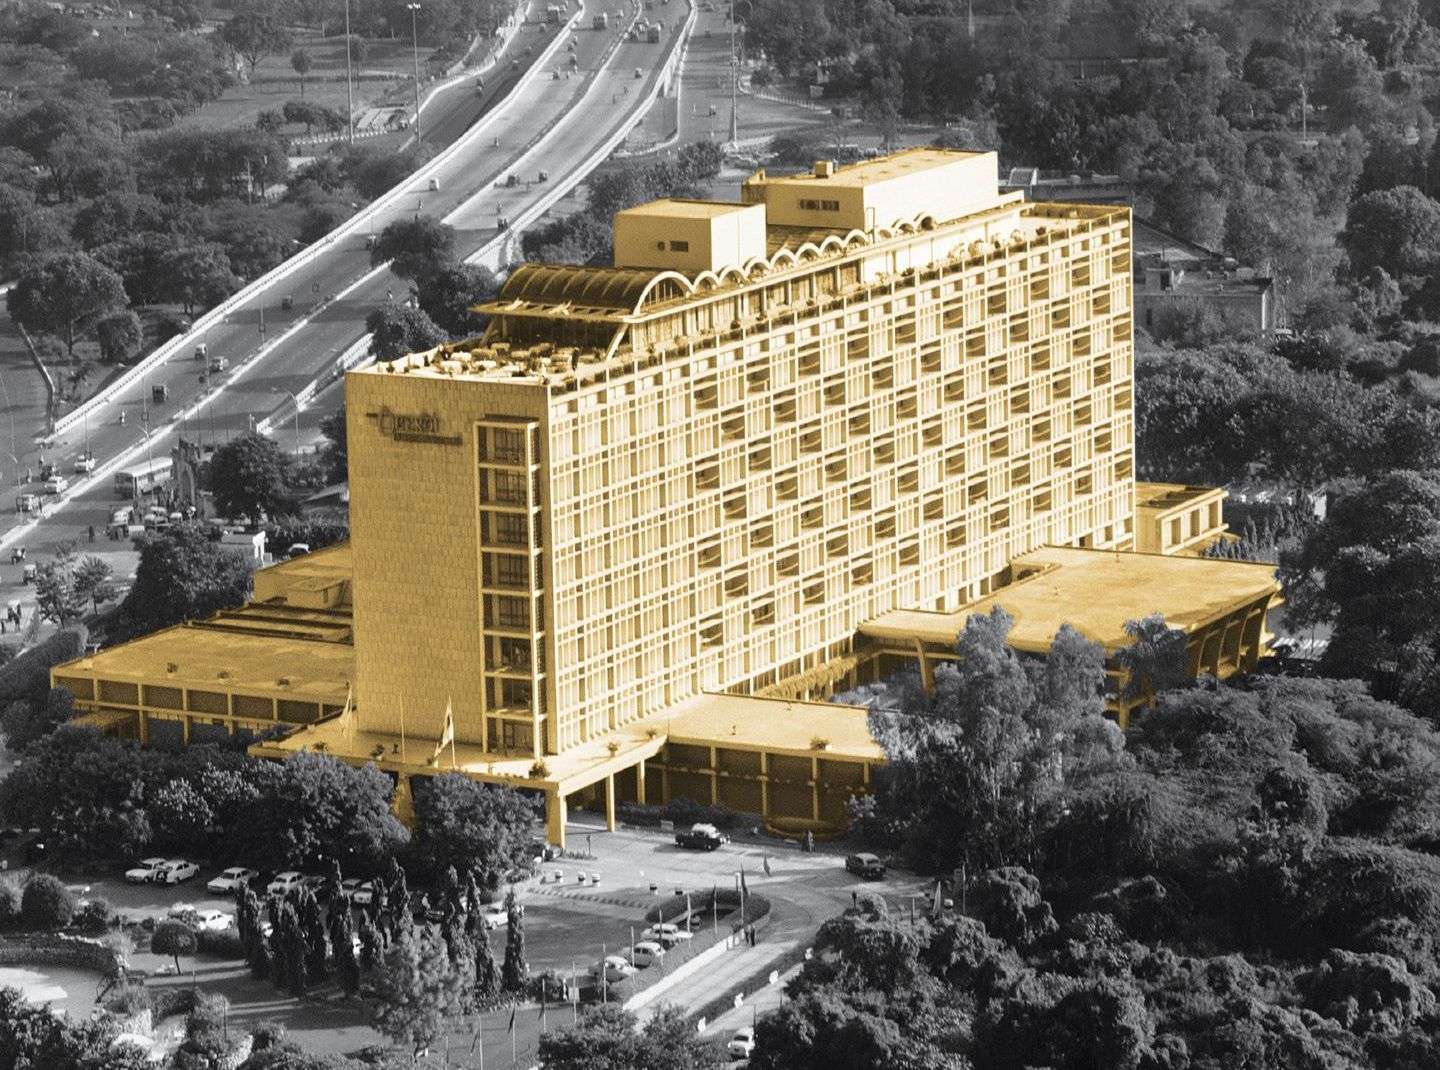 Hotel Oberoi Intercontinental in Delhi